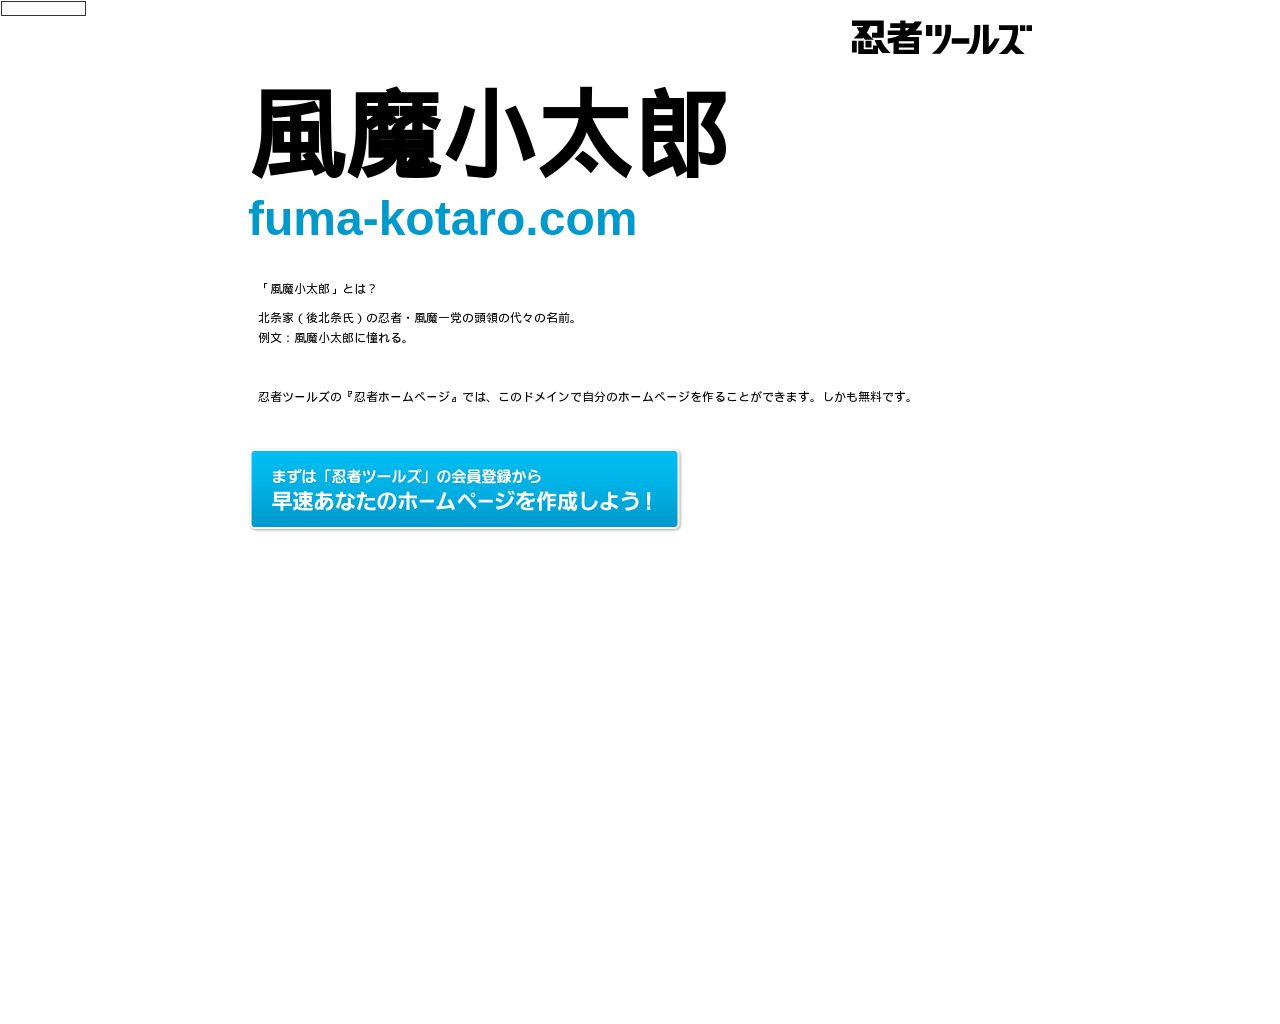 fuma-kotaro.com